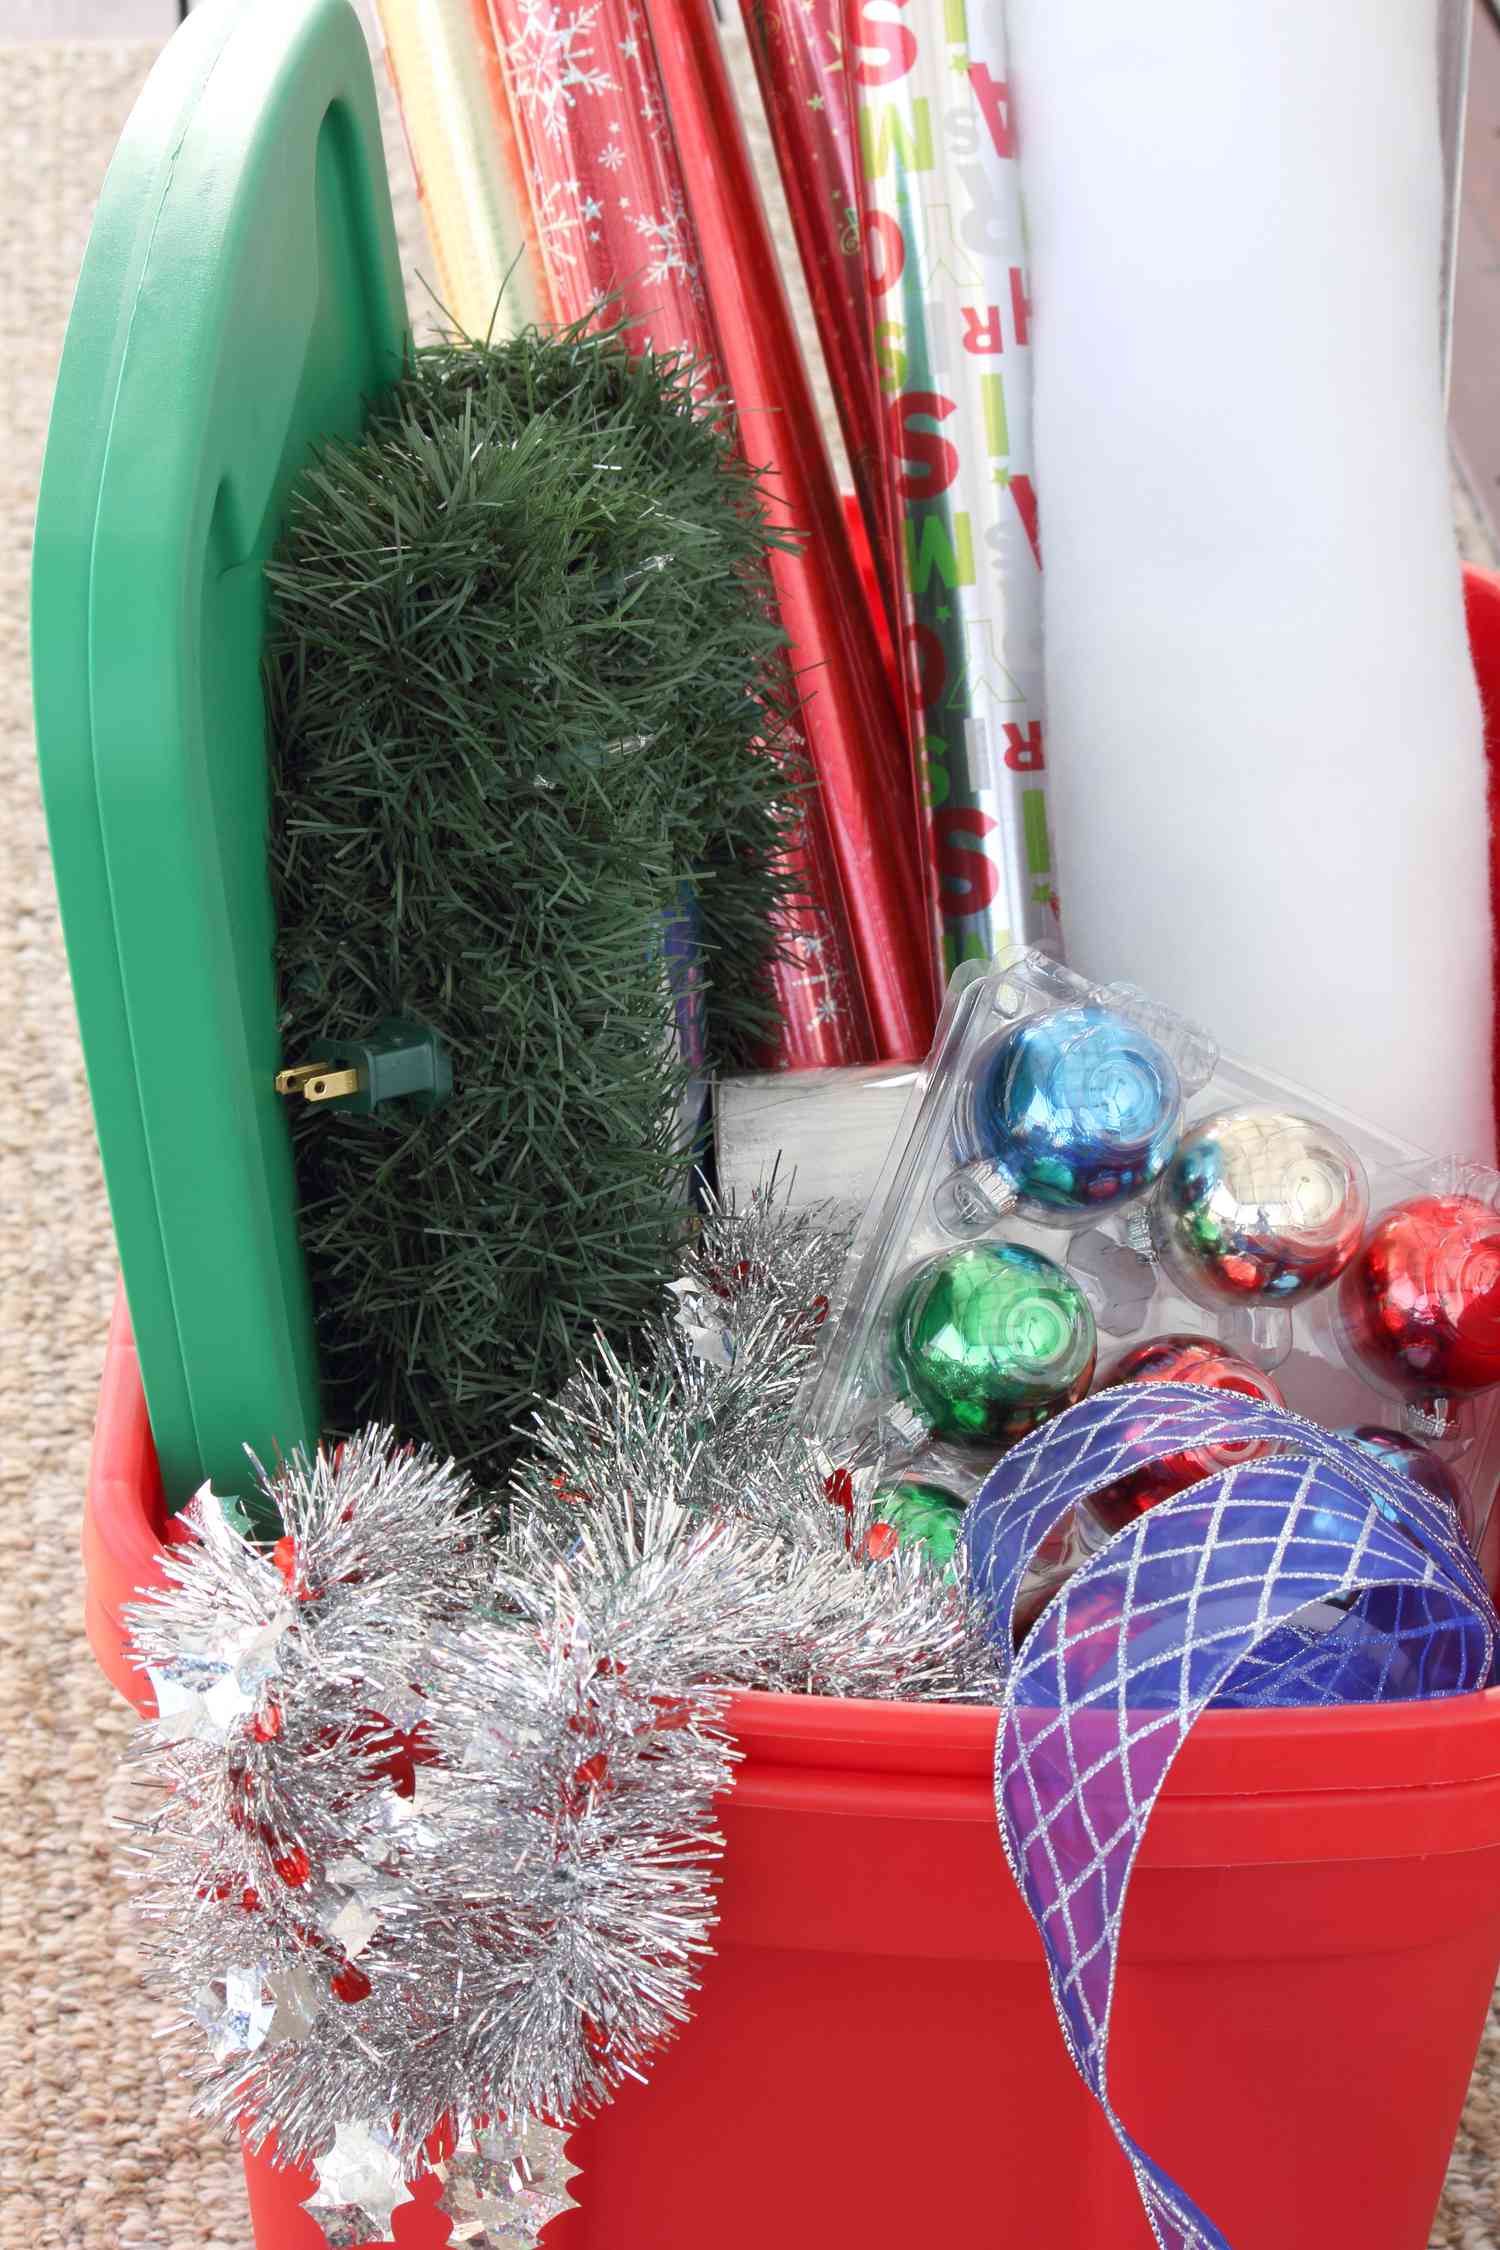 Weihnachtsdekoration in einer roten Wanne mit grünem Deckel